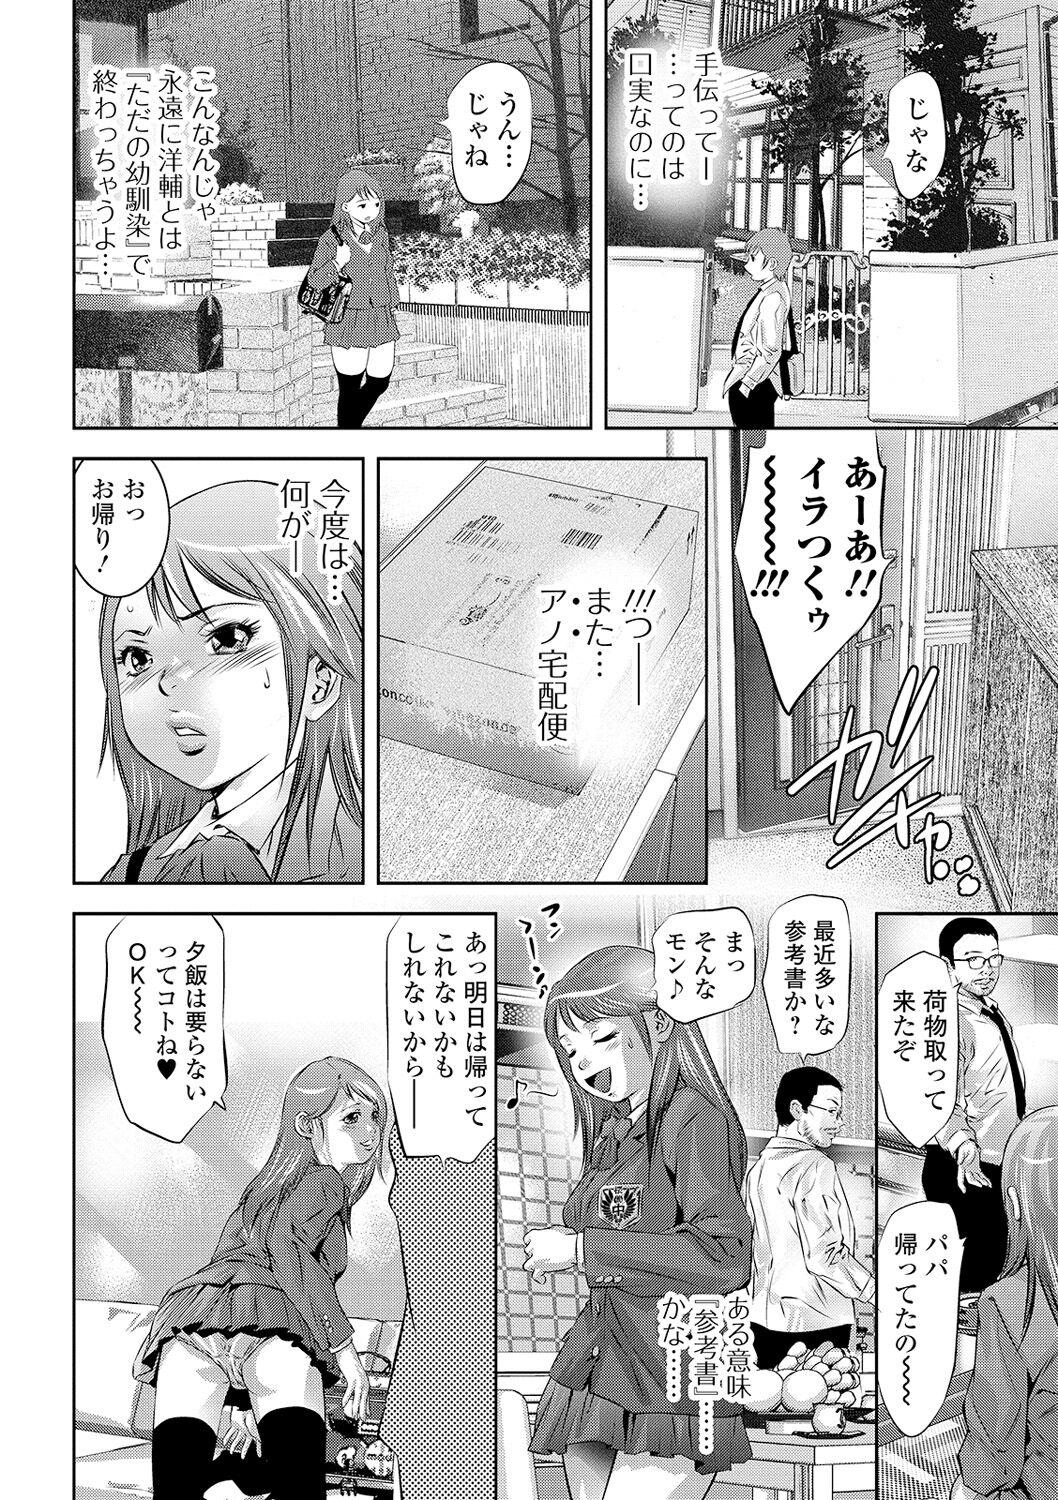 Messy Niku no Kizuna Analfuck - Page 8